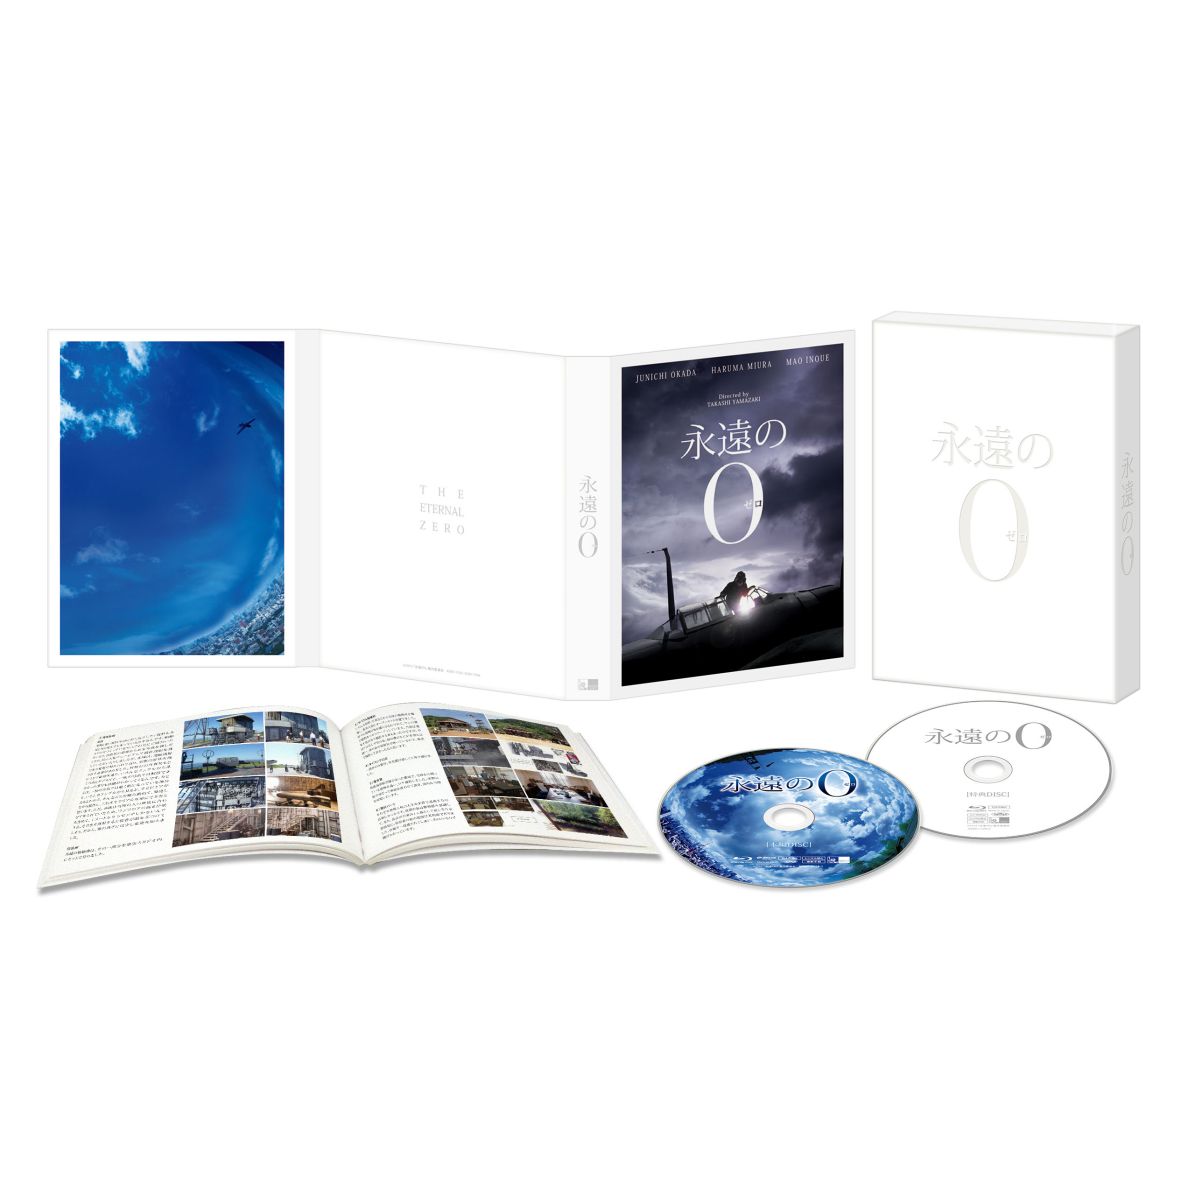 楽天ブックス: 永遠の0 Blu-ray豪華版 【初回生産限定仕様】【Blu-ray】 - 岡田准一 - 4527427811287 : DVD